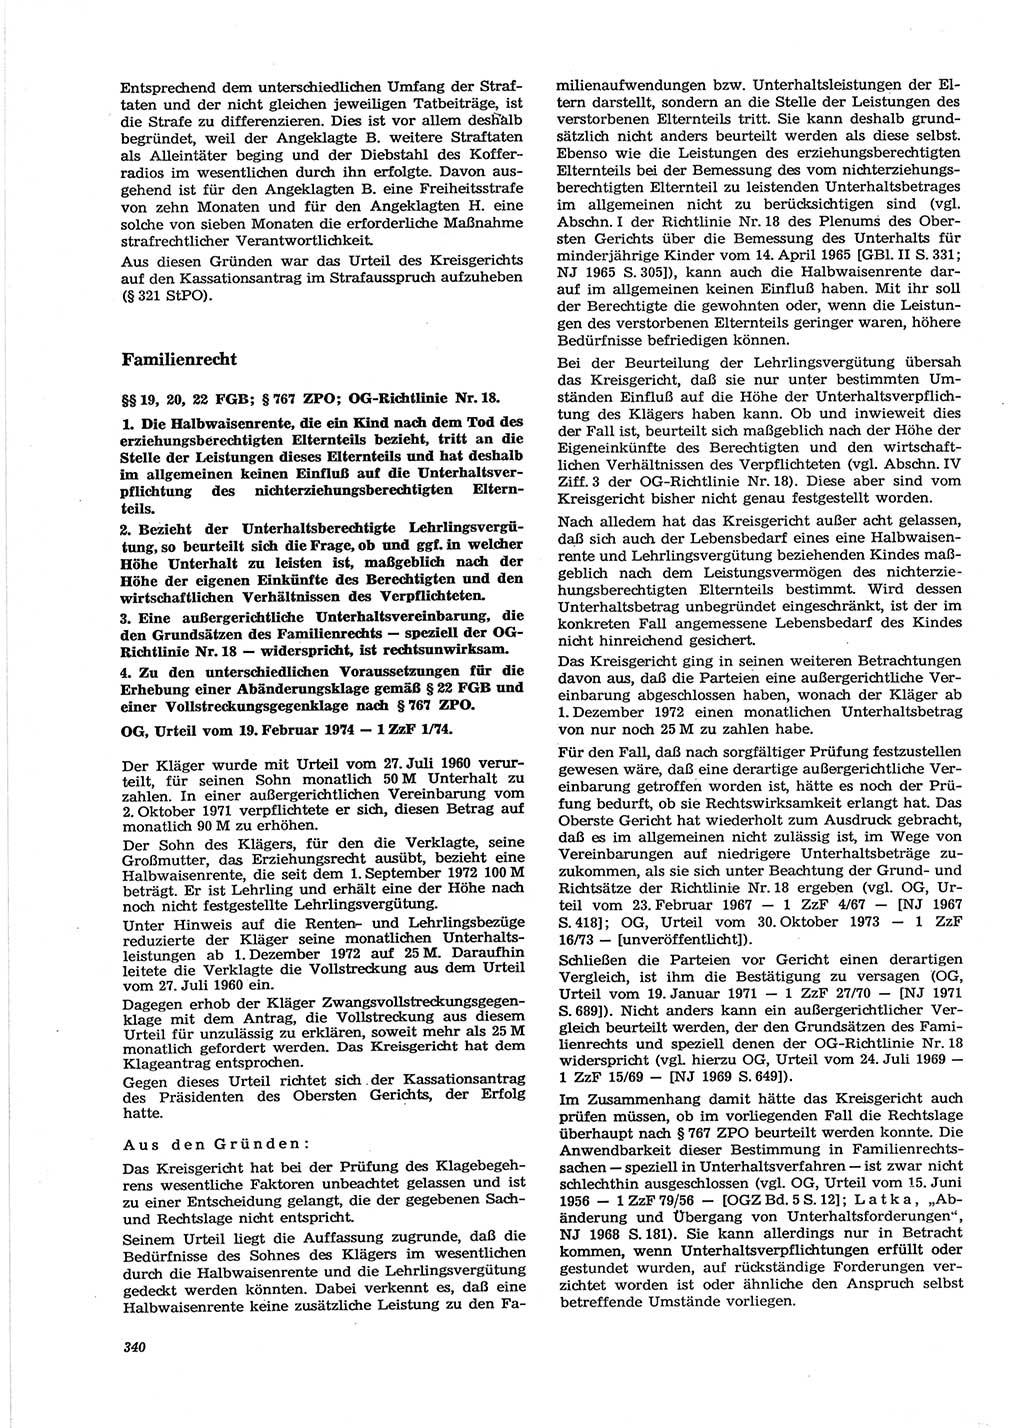 Neue Justiz (NJ), Zeitschrift für Recht und Rechtswissenschaft [Deutsche Demokratische Republik (DDR)], 28. Jahrgang 1974, Seite 340 (NJ DDR 1974, S. 340)